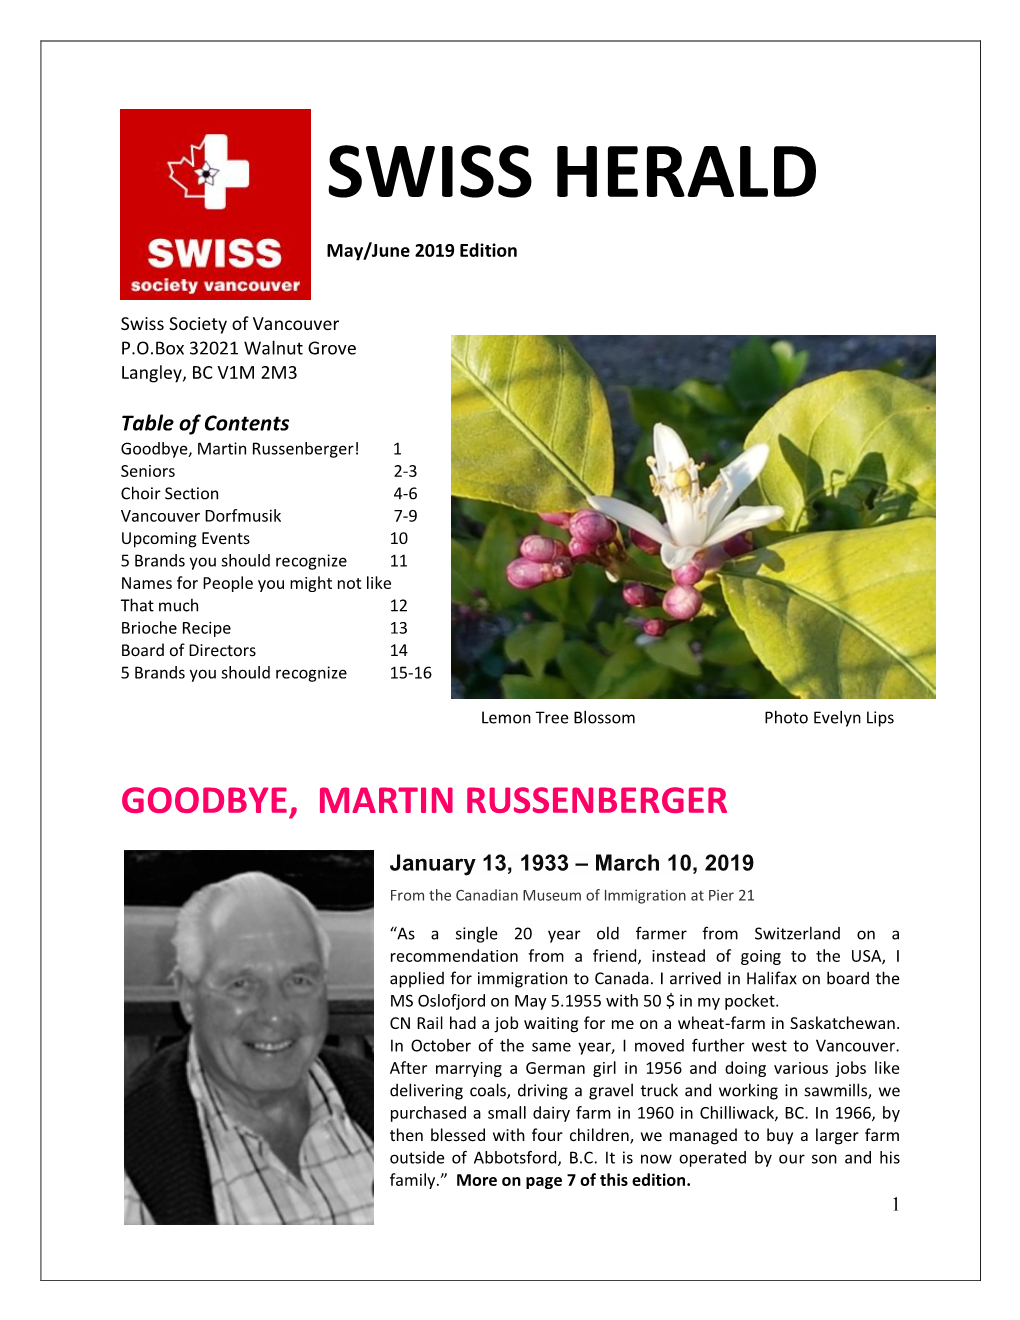 May/June 2019 Swiss Herald